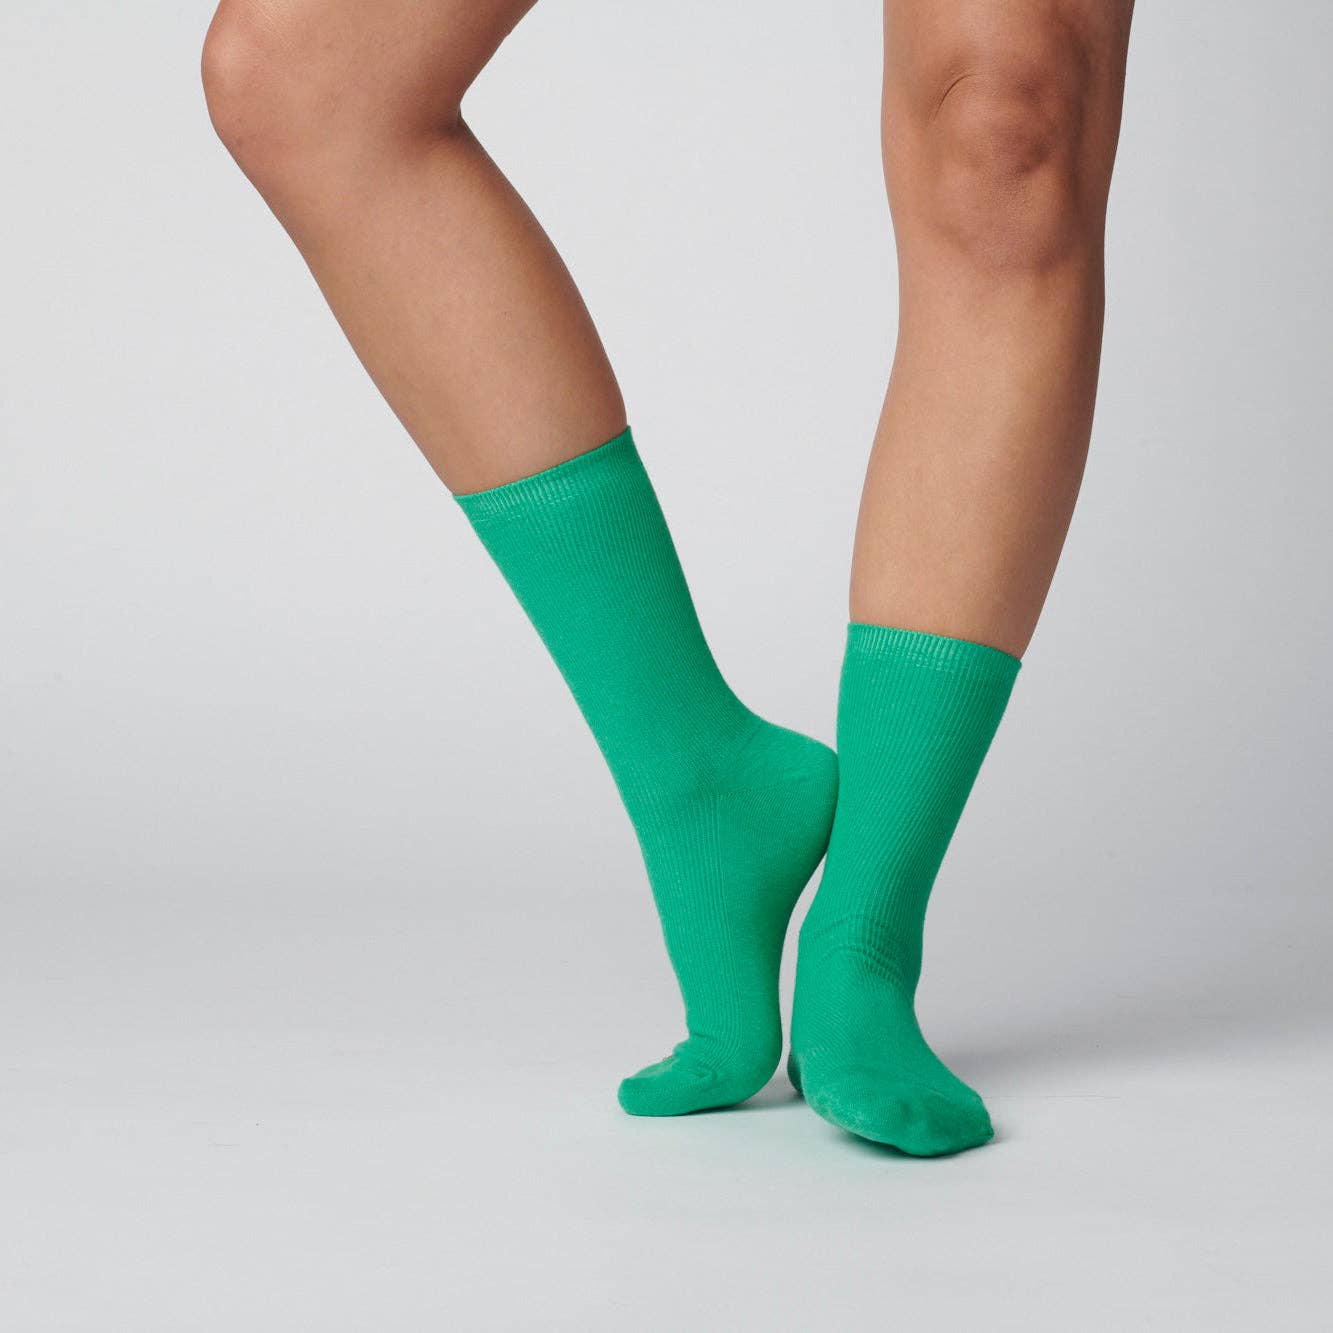 Hooray Sock Co. - Kelly Green (Cotton): Small (Women's 4 - 10)